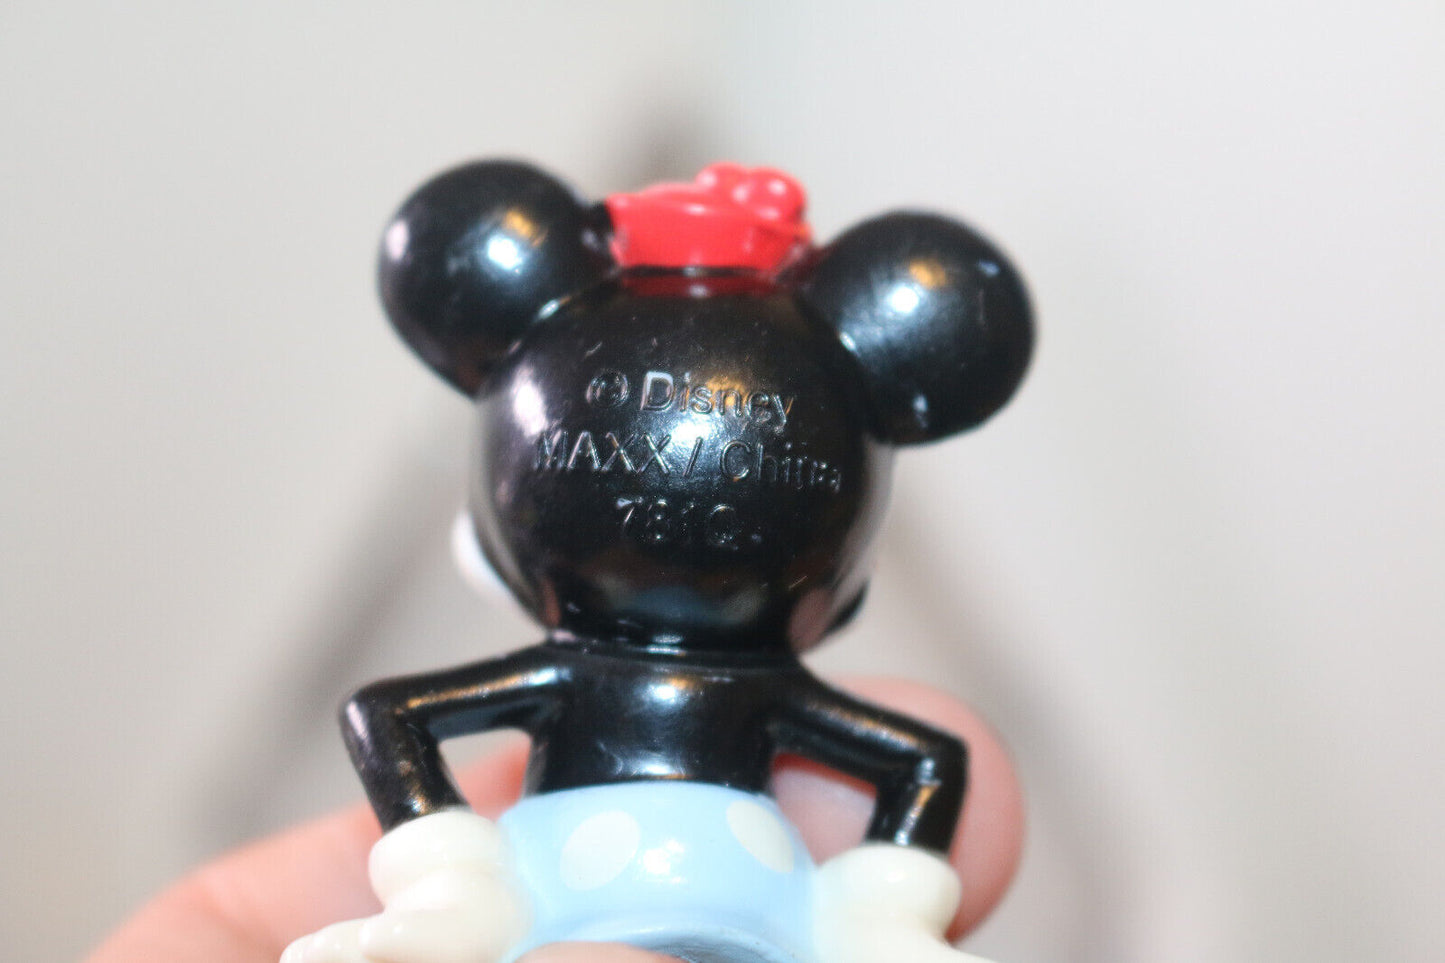 Winnie & Mickey Mouse Walt Disney Figures Toys 2385Cw